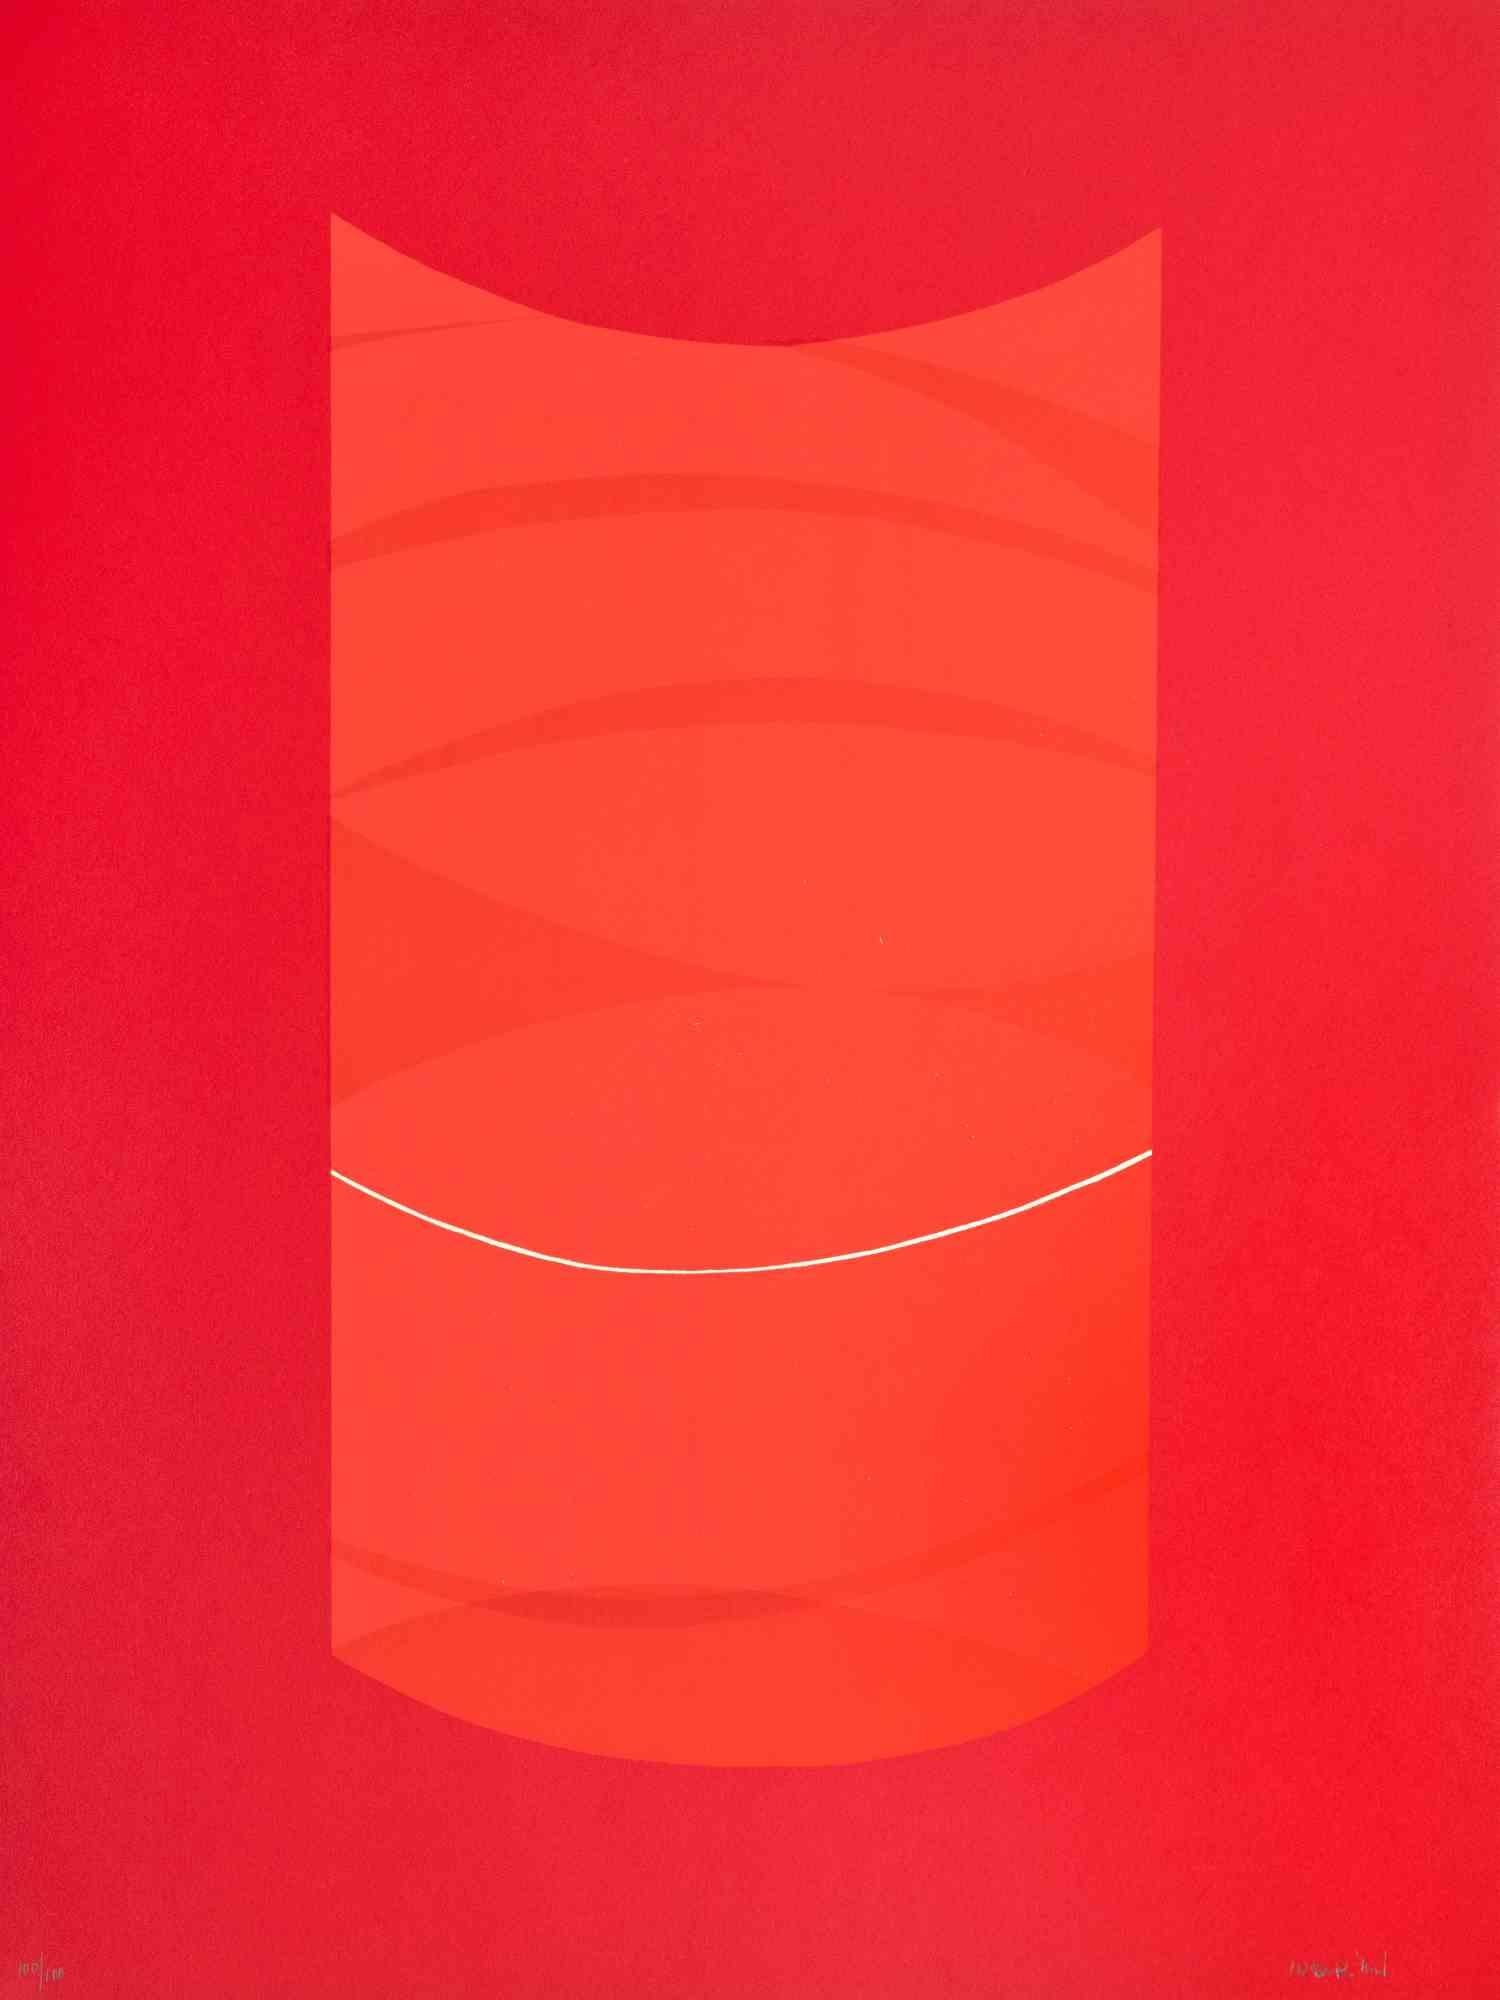 Red One ist ein zeitgenössisches Kunstwerk von Lorenzo Indrimi aus den 1970er Jahren.

Gemischtfarbige Lithographie.

Am unteren Rand handsigniert und datiert.

Auflage von 73/100

